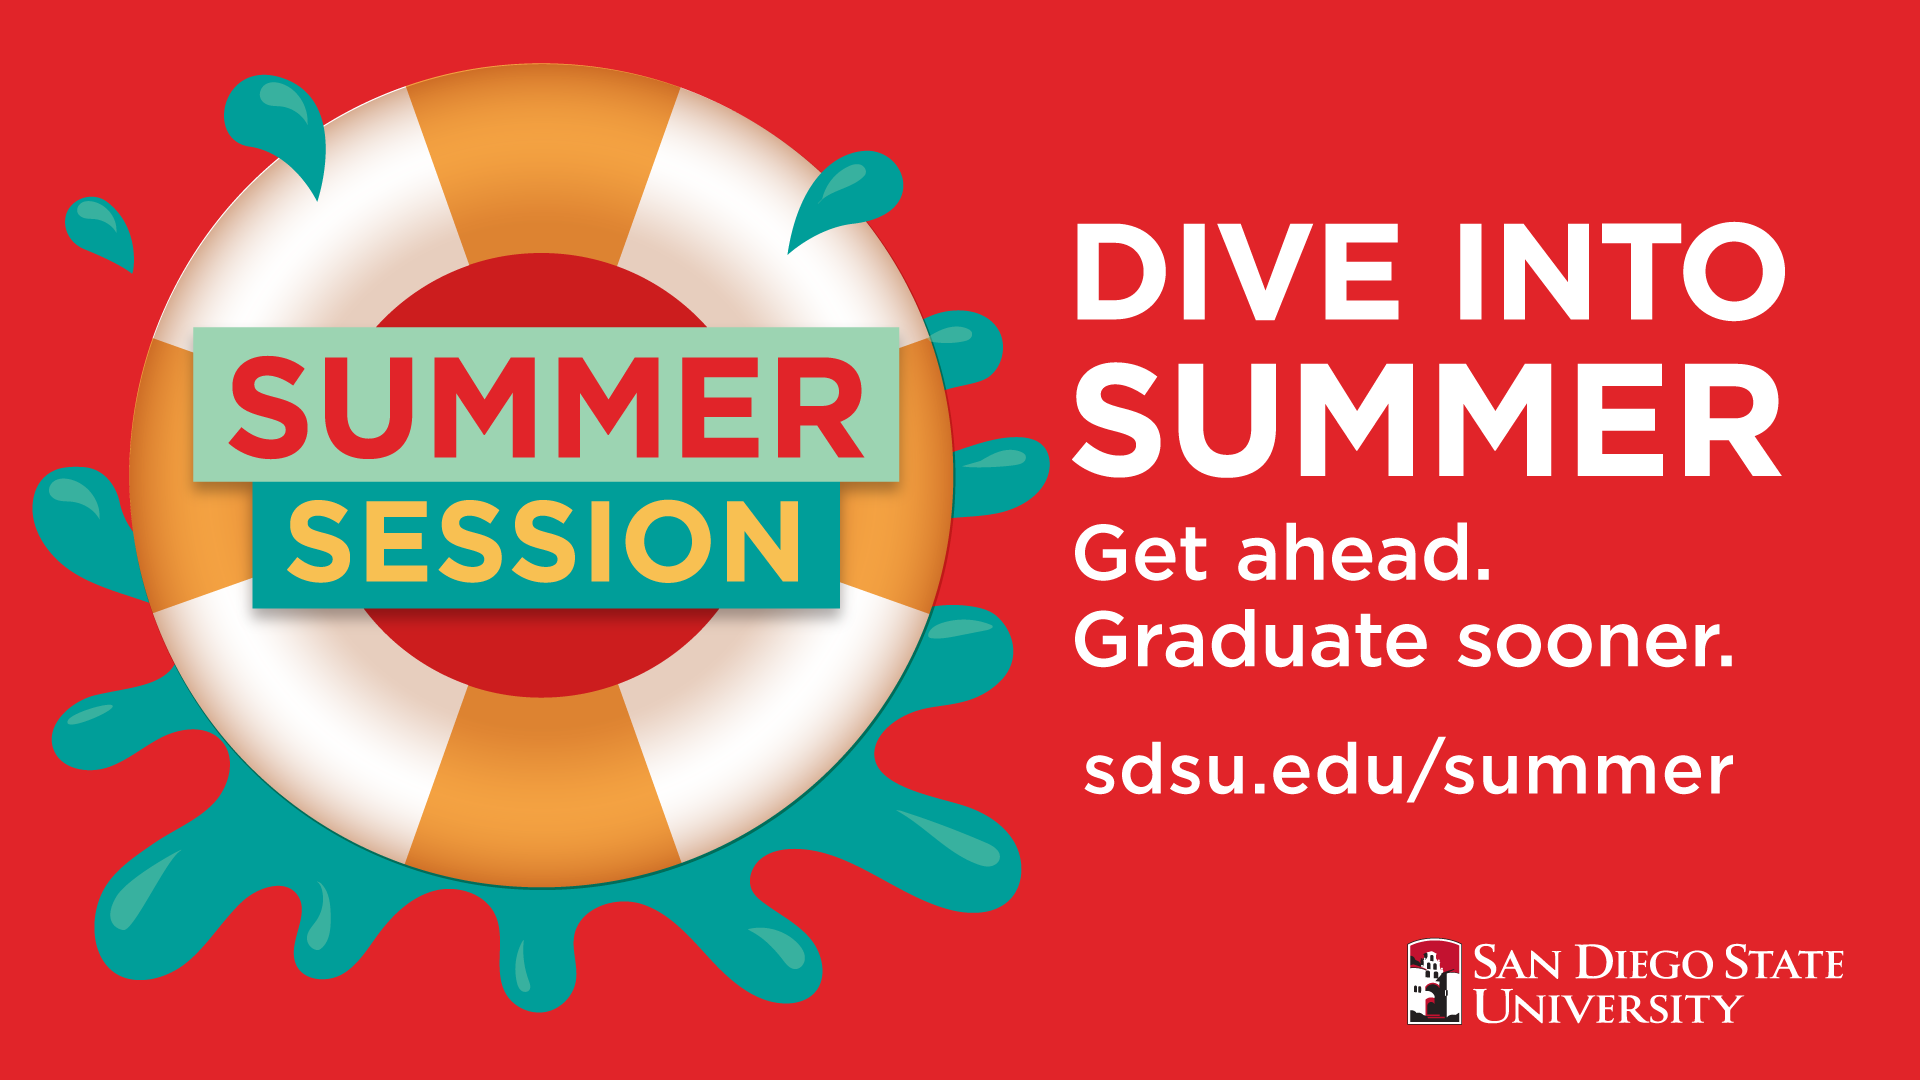 Dive into summer. Get ahead. Graduate sooner.